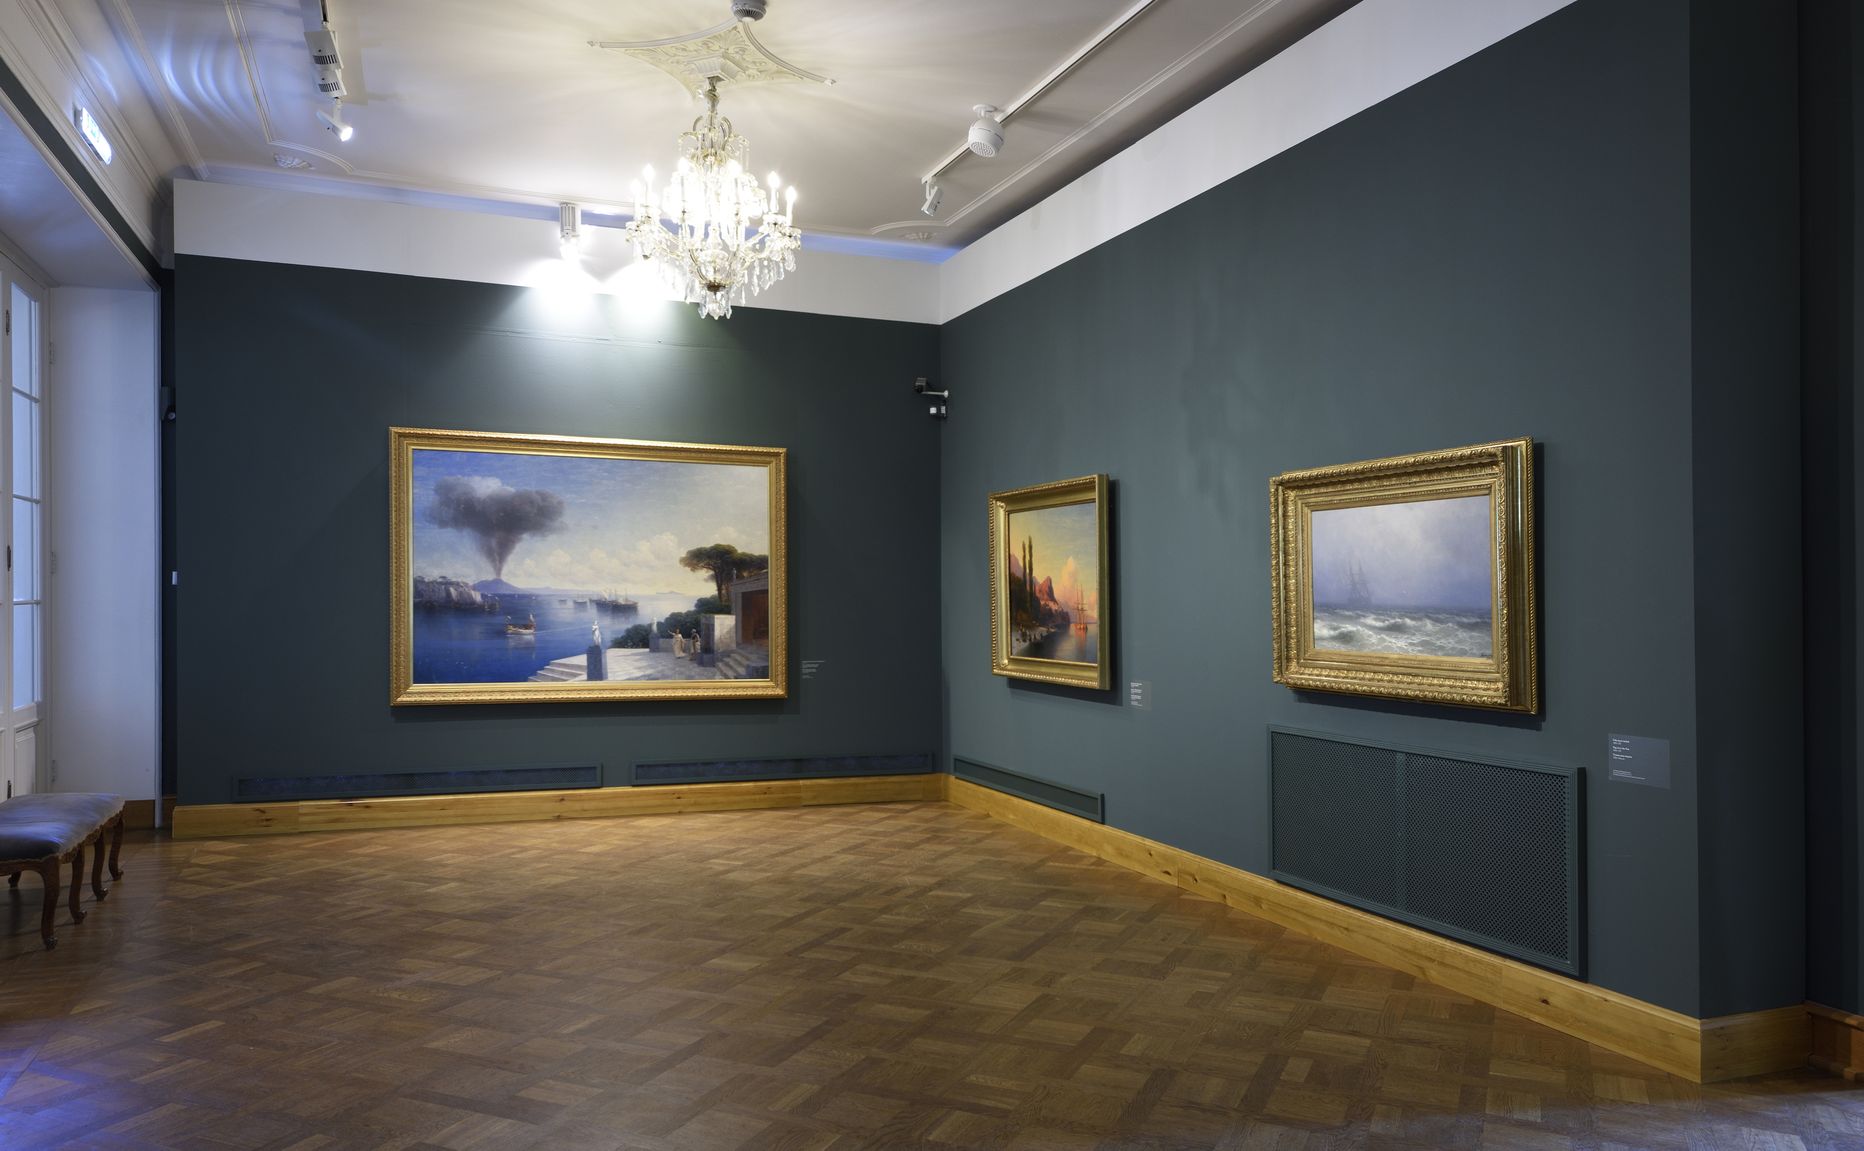 Ivan Aivazovski loomingu näituse keskmes on kunstniku maal "Vaade Vesuuvile päev enne vulkaanipurset". Haruldus toodi Eesti Kunstimuuseumi kogust publiku ette pärast restaureerimist, mis kestis pea kolm aastat. Näitus jääb Kadrioru lossis avatuks 8. juulini.